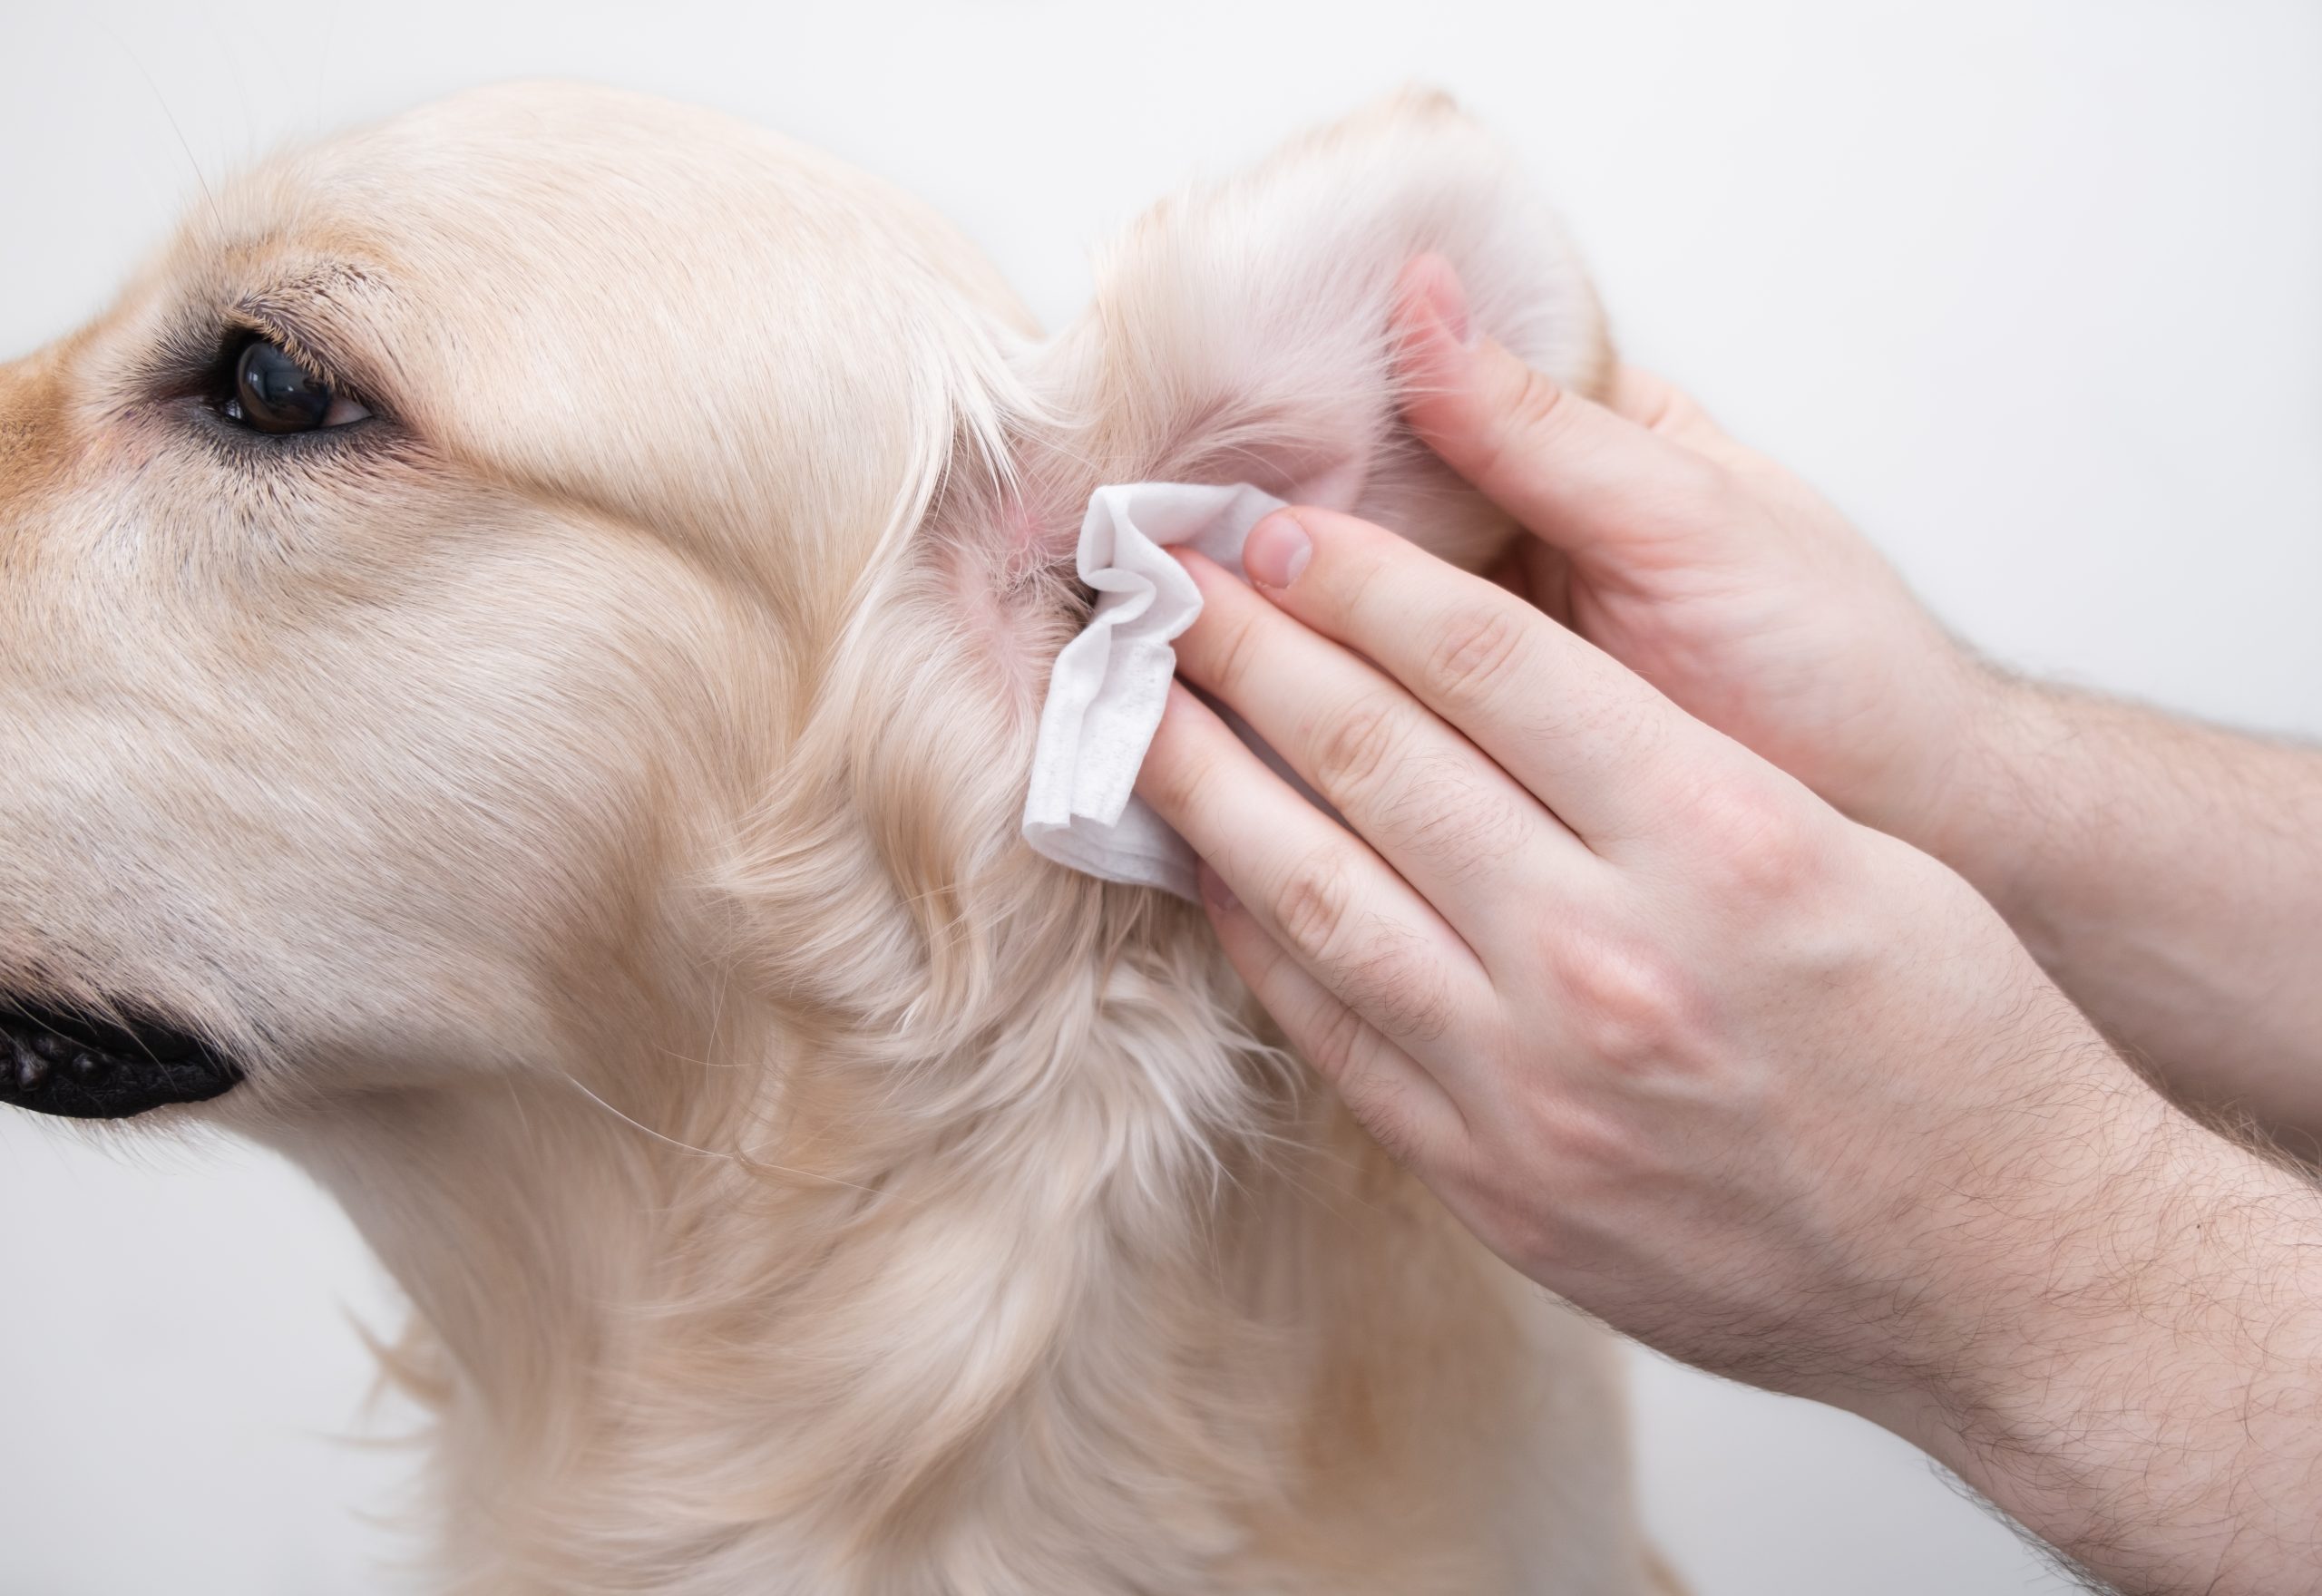 Schilddrüsenunterfunktion beim Hund,Hund Schilddrüsenunterfunktion,Hunde OP Versicherung,Hundekrankenversicherung,Hundeversicherung,Tierversicherung,Hypothyreose, (Hypothyreose) Schilddrüsenunterfunktion beim Hund